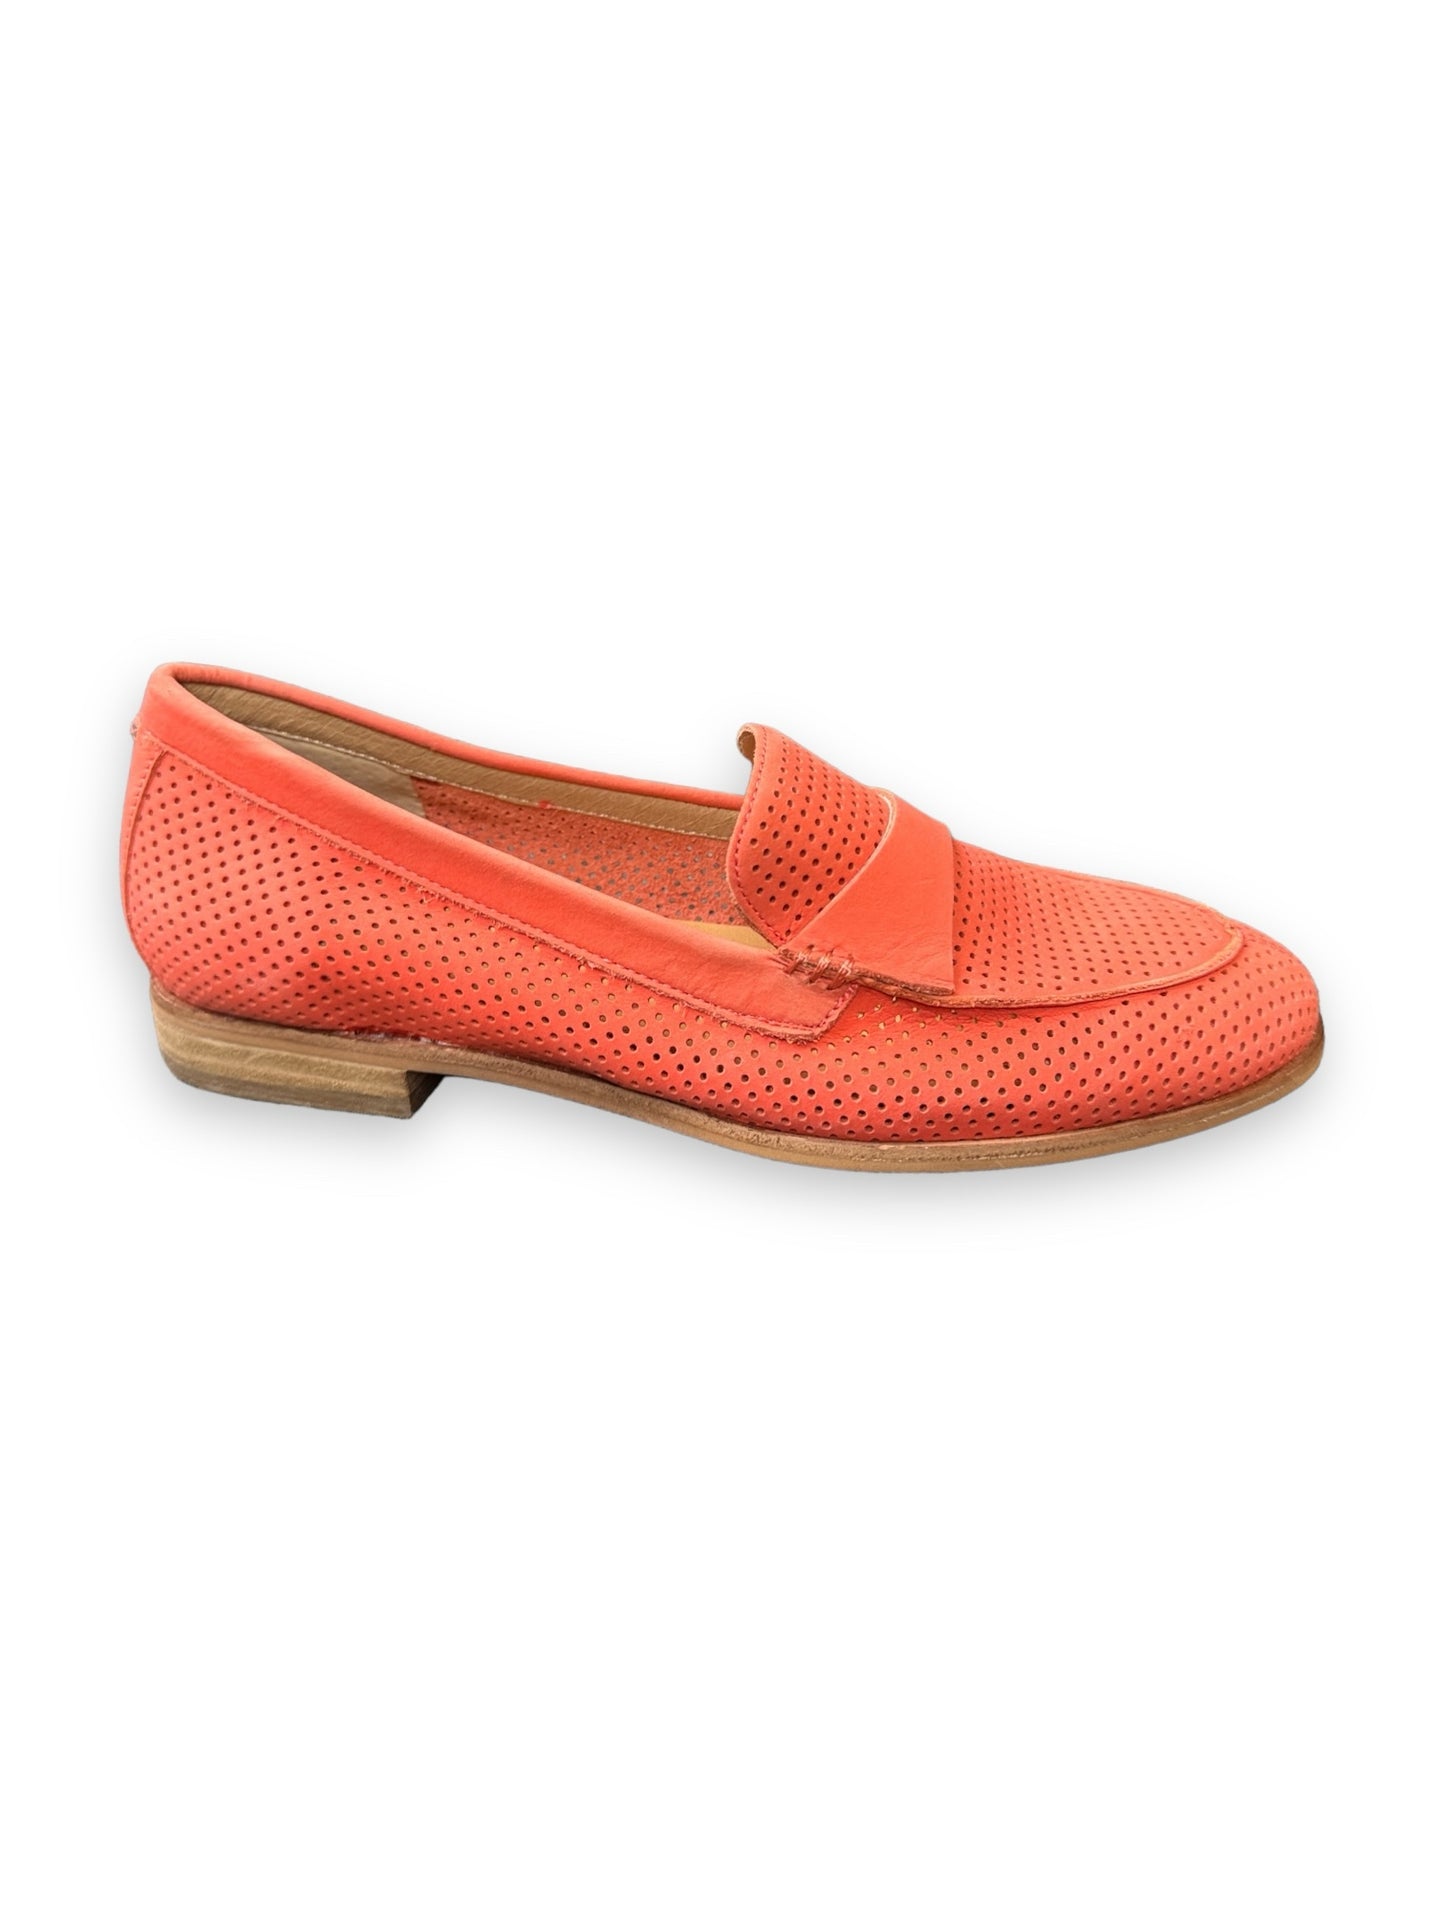 Shoe Size 7 Corso Como Coral Shoes